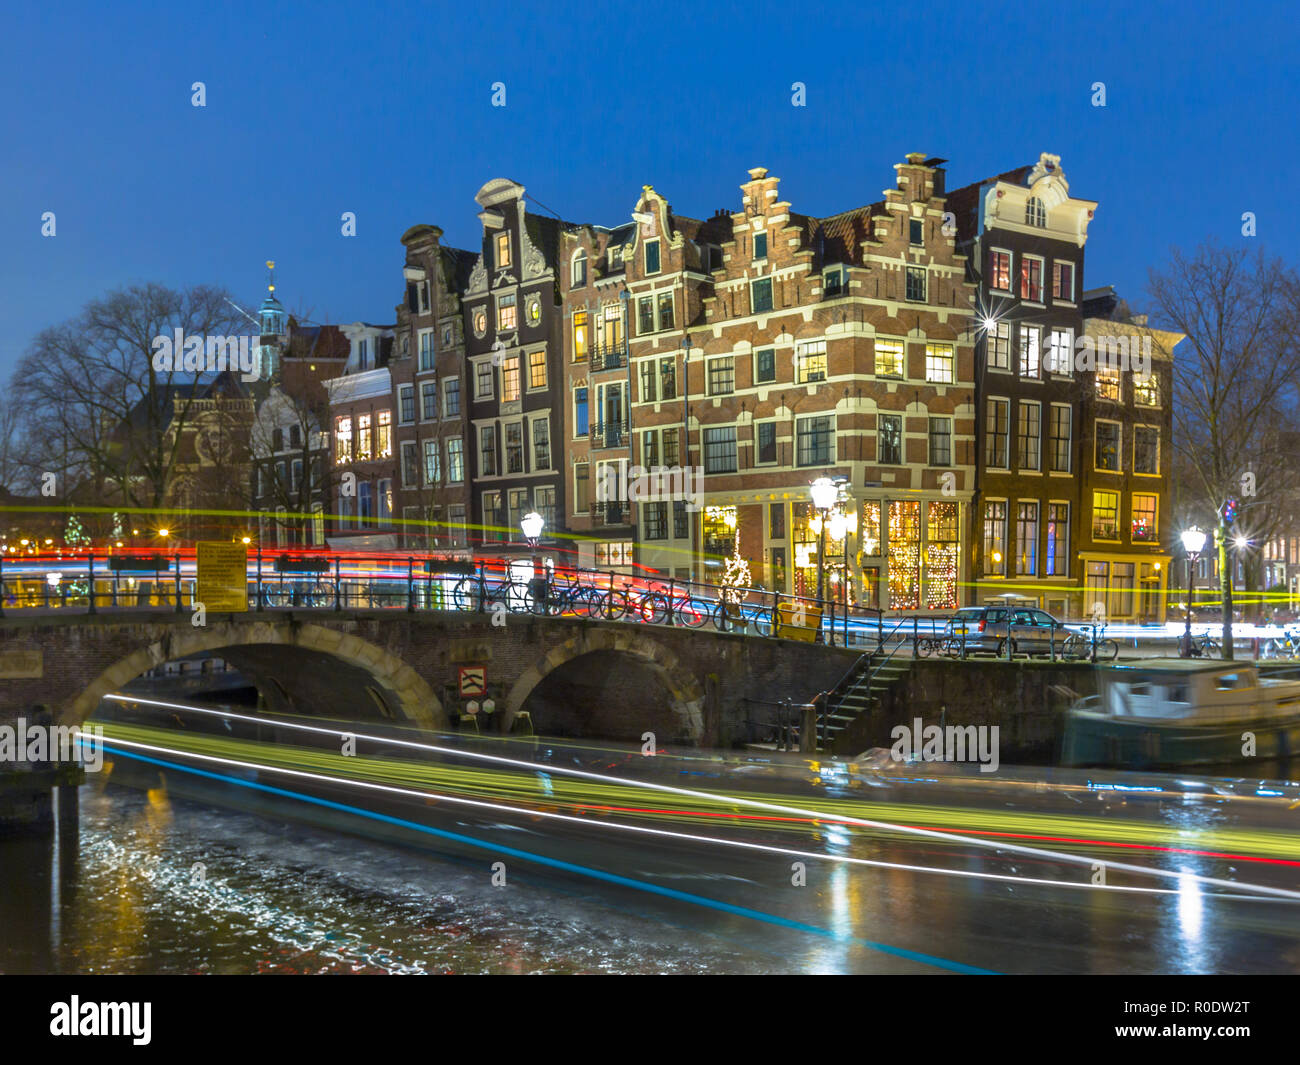 Photo de nuit de maisons traditionnelles colorées avec des bateaux d'excursion et des voitures à l'angle de brouwersgracht et Prinsengracht dans le monde de l'UNESCO Banque D'Images